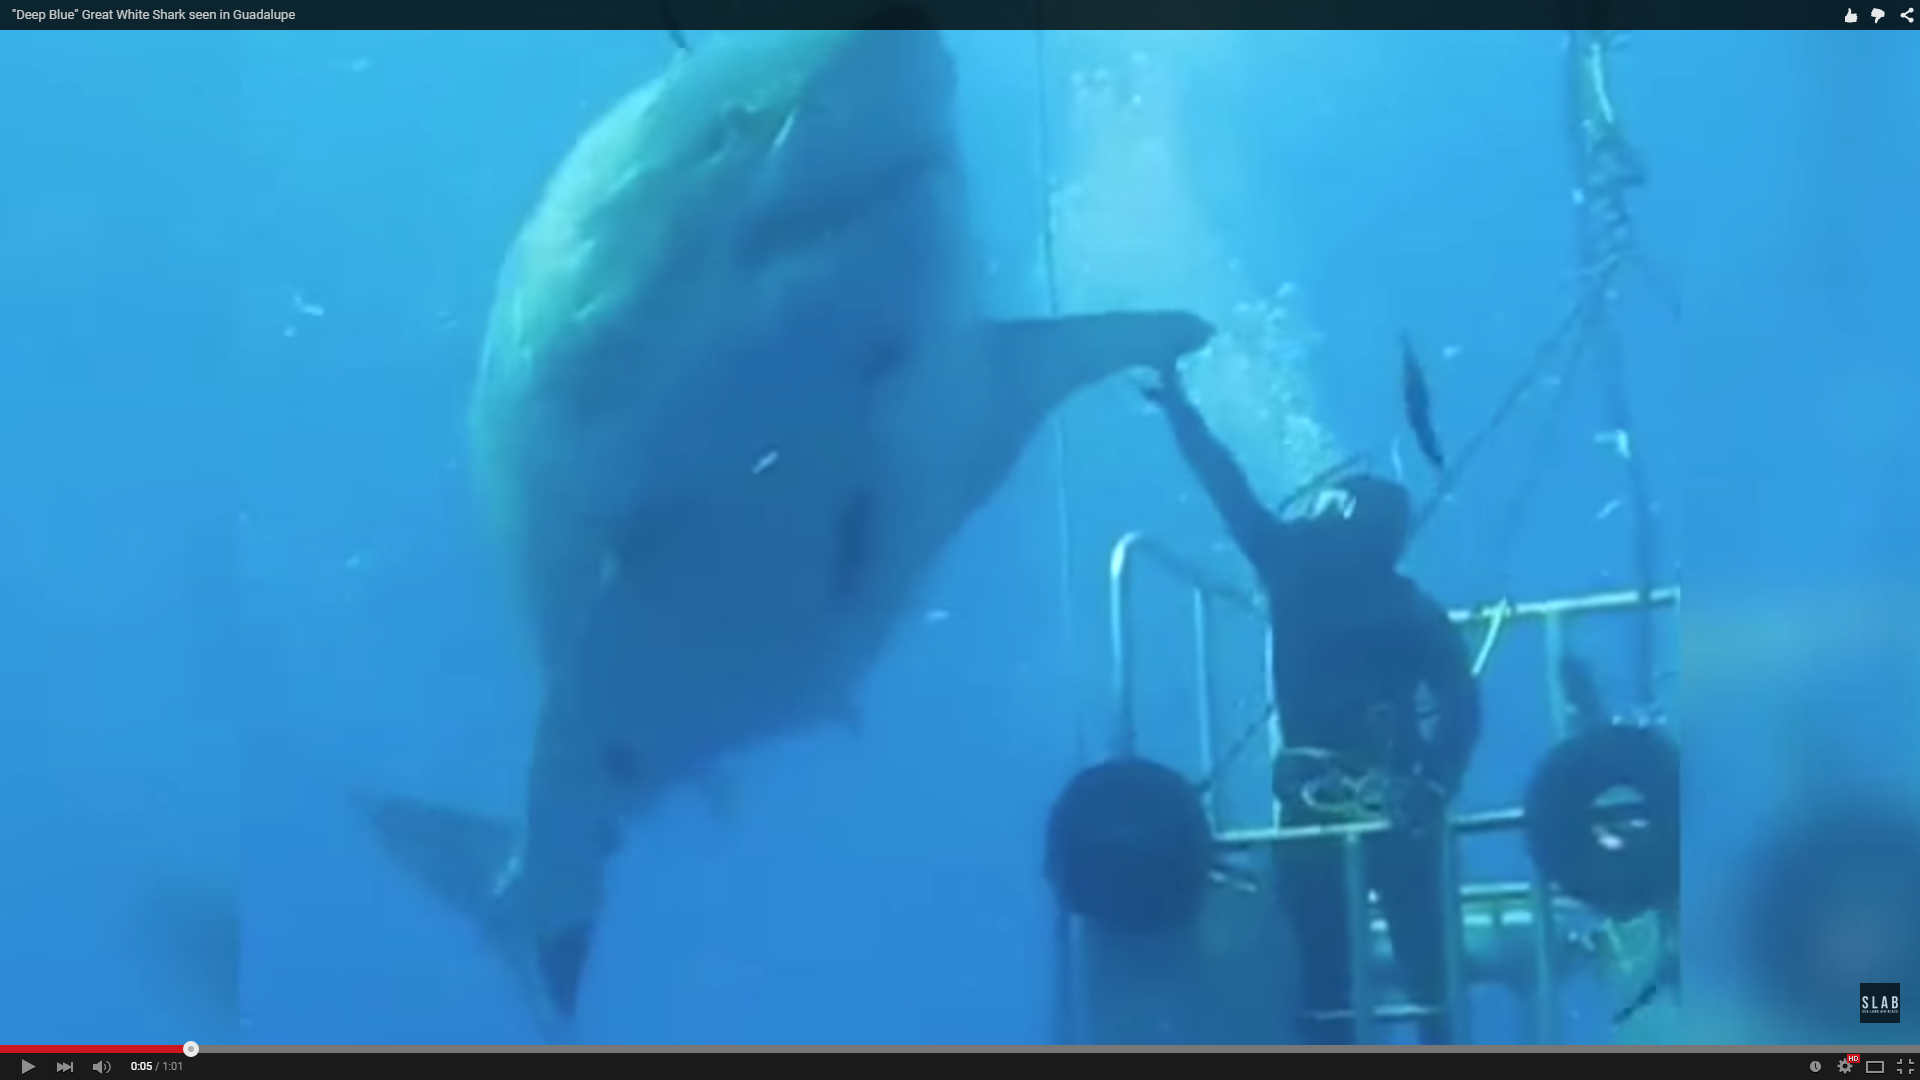 That's a big ass shark.  Hi 5 it!